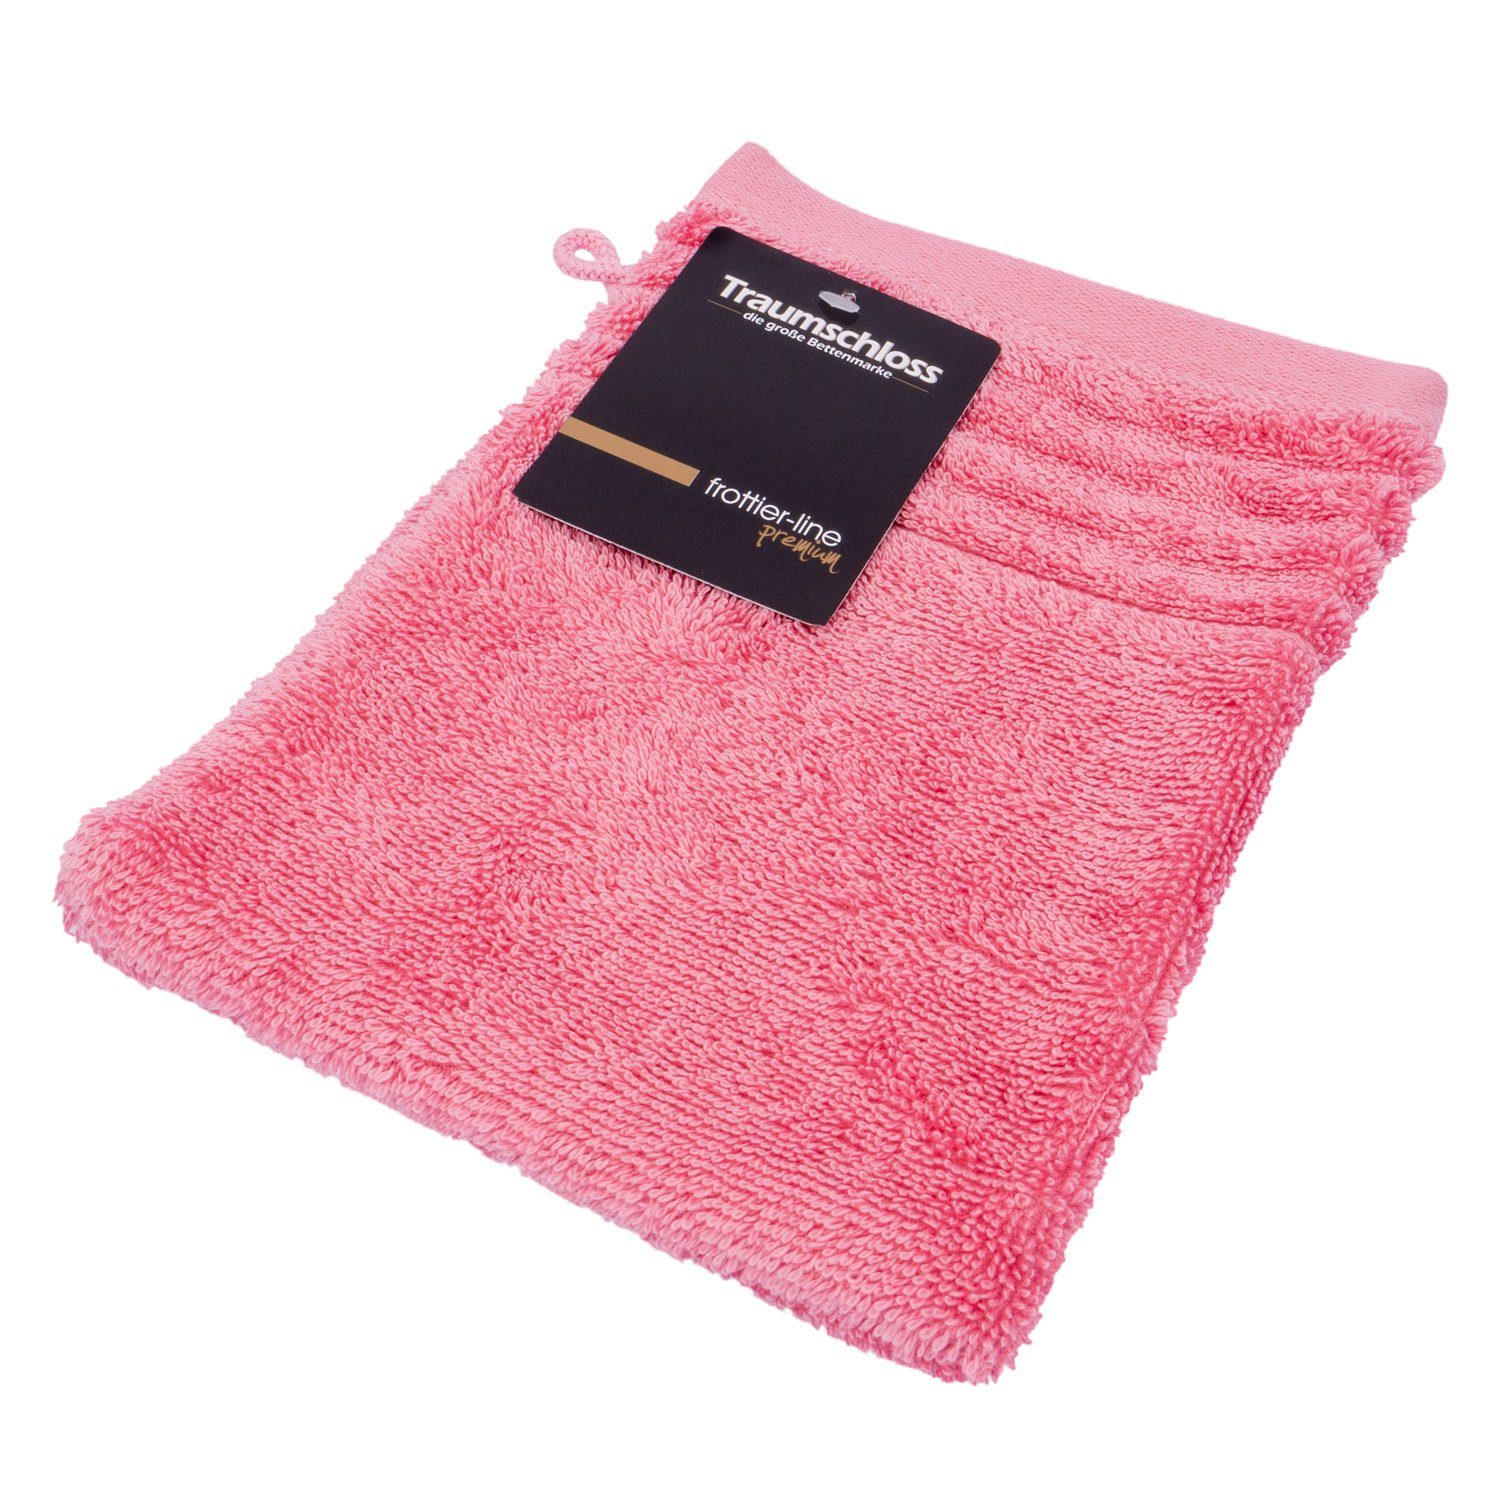 Traumschloss Waschlappen Premium-Line (1-tlg), 100% amerikanische Supima Baumwolle mit 600g/m² pink